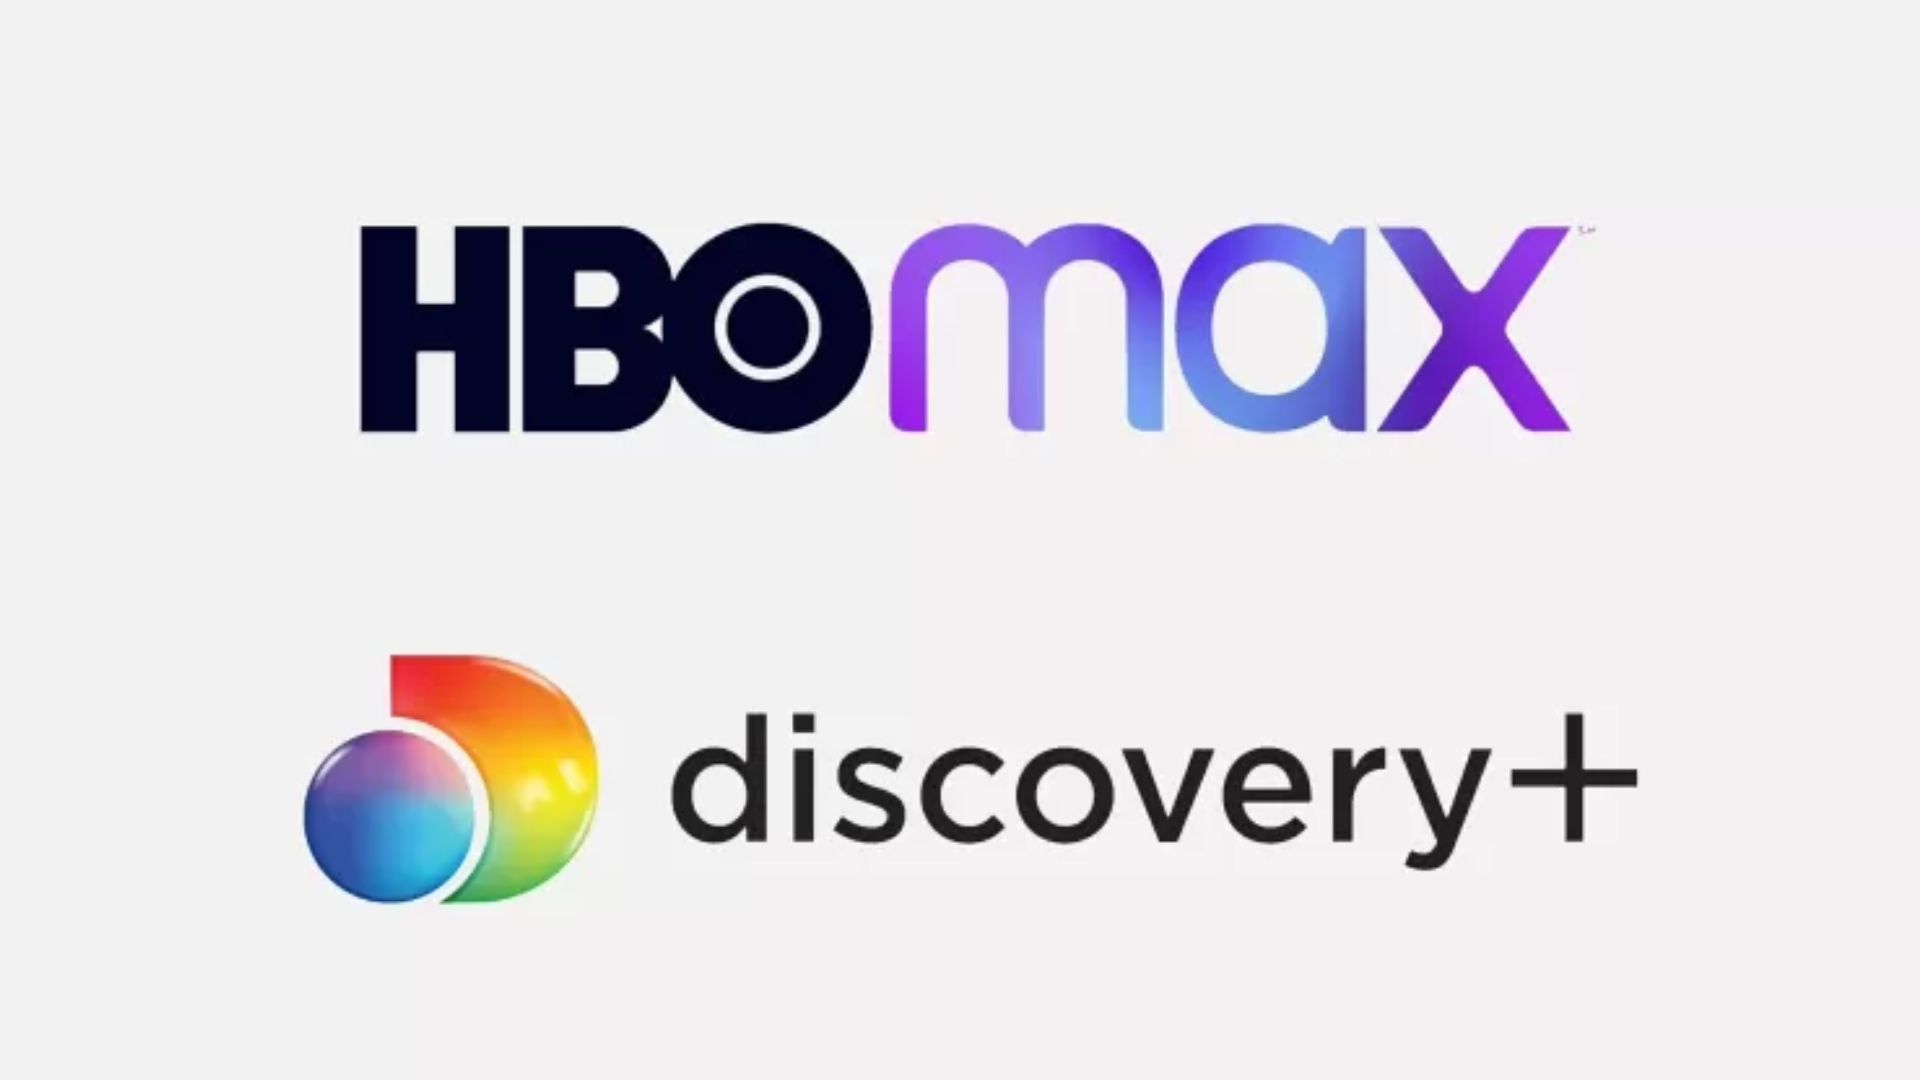 Lista de títulos que serão removidos da HBO Max até o final do mês